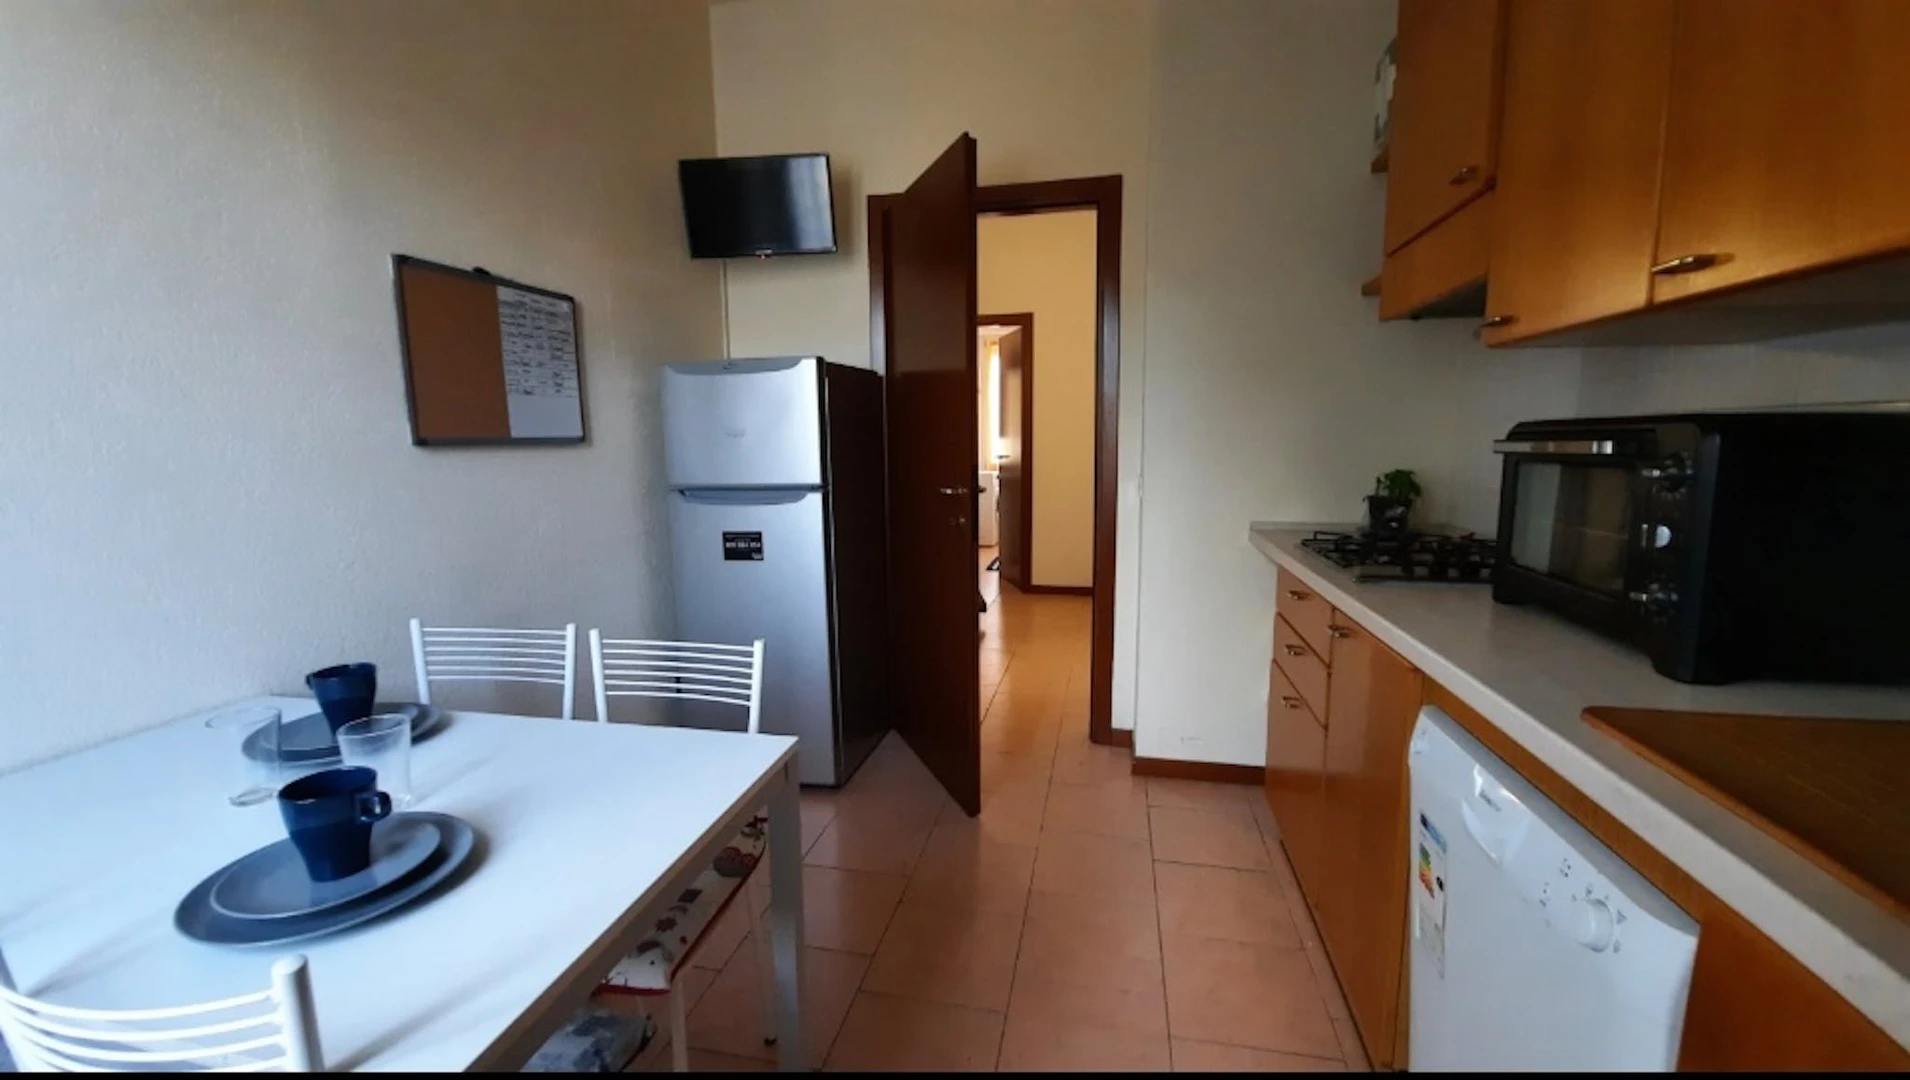 Alquiler de habitación en piso compartido en Bérgamo